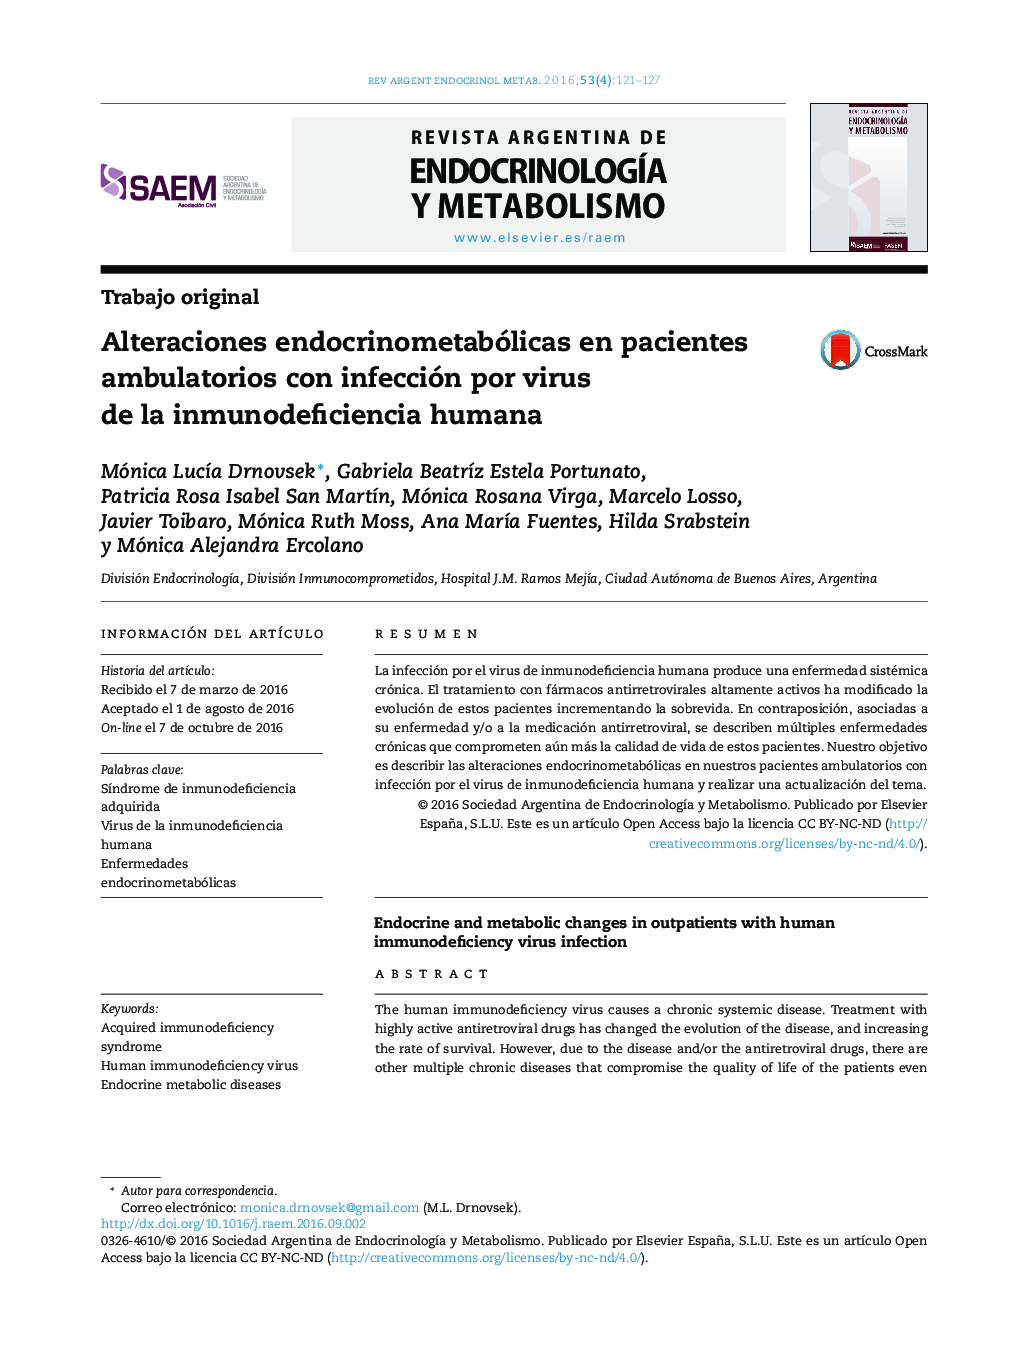 Alteraciones endocrinometabólicas en pacientes ambulatorios con infección por virus de la inmunodeficiencia humana